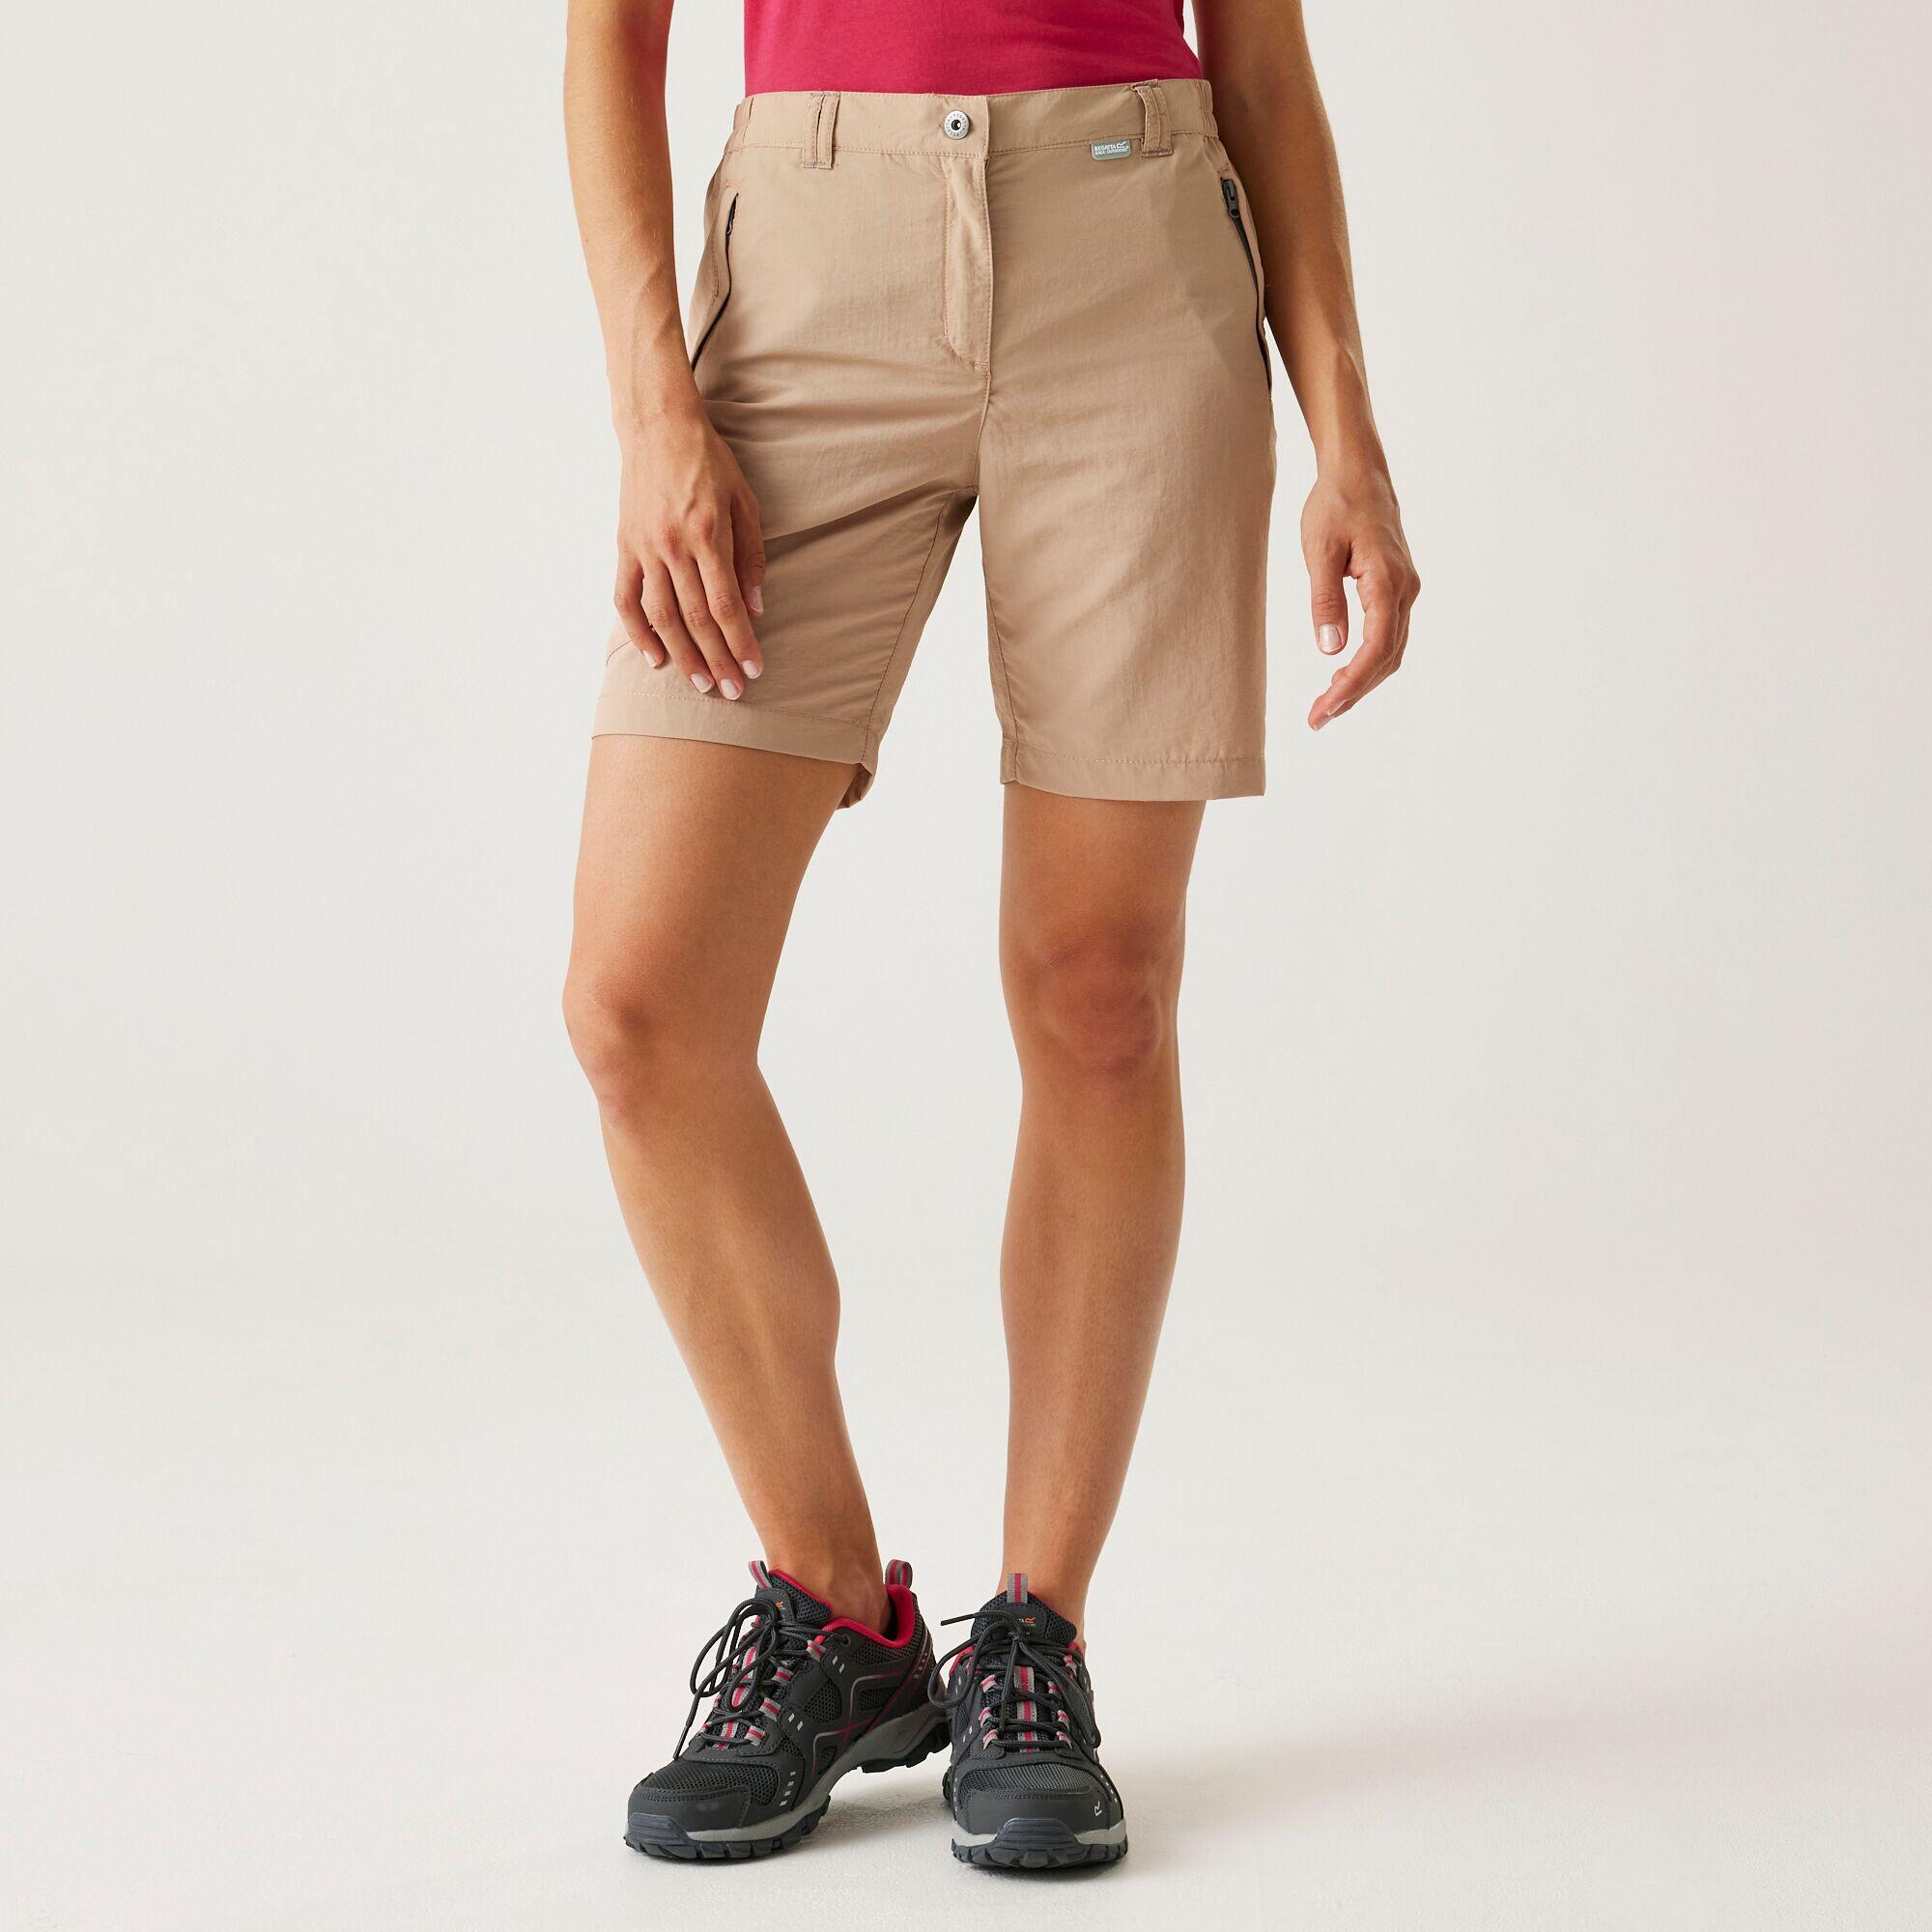 Chaska II Women's Hiking Shorts - Beige 1/5